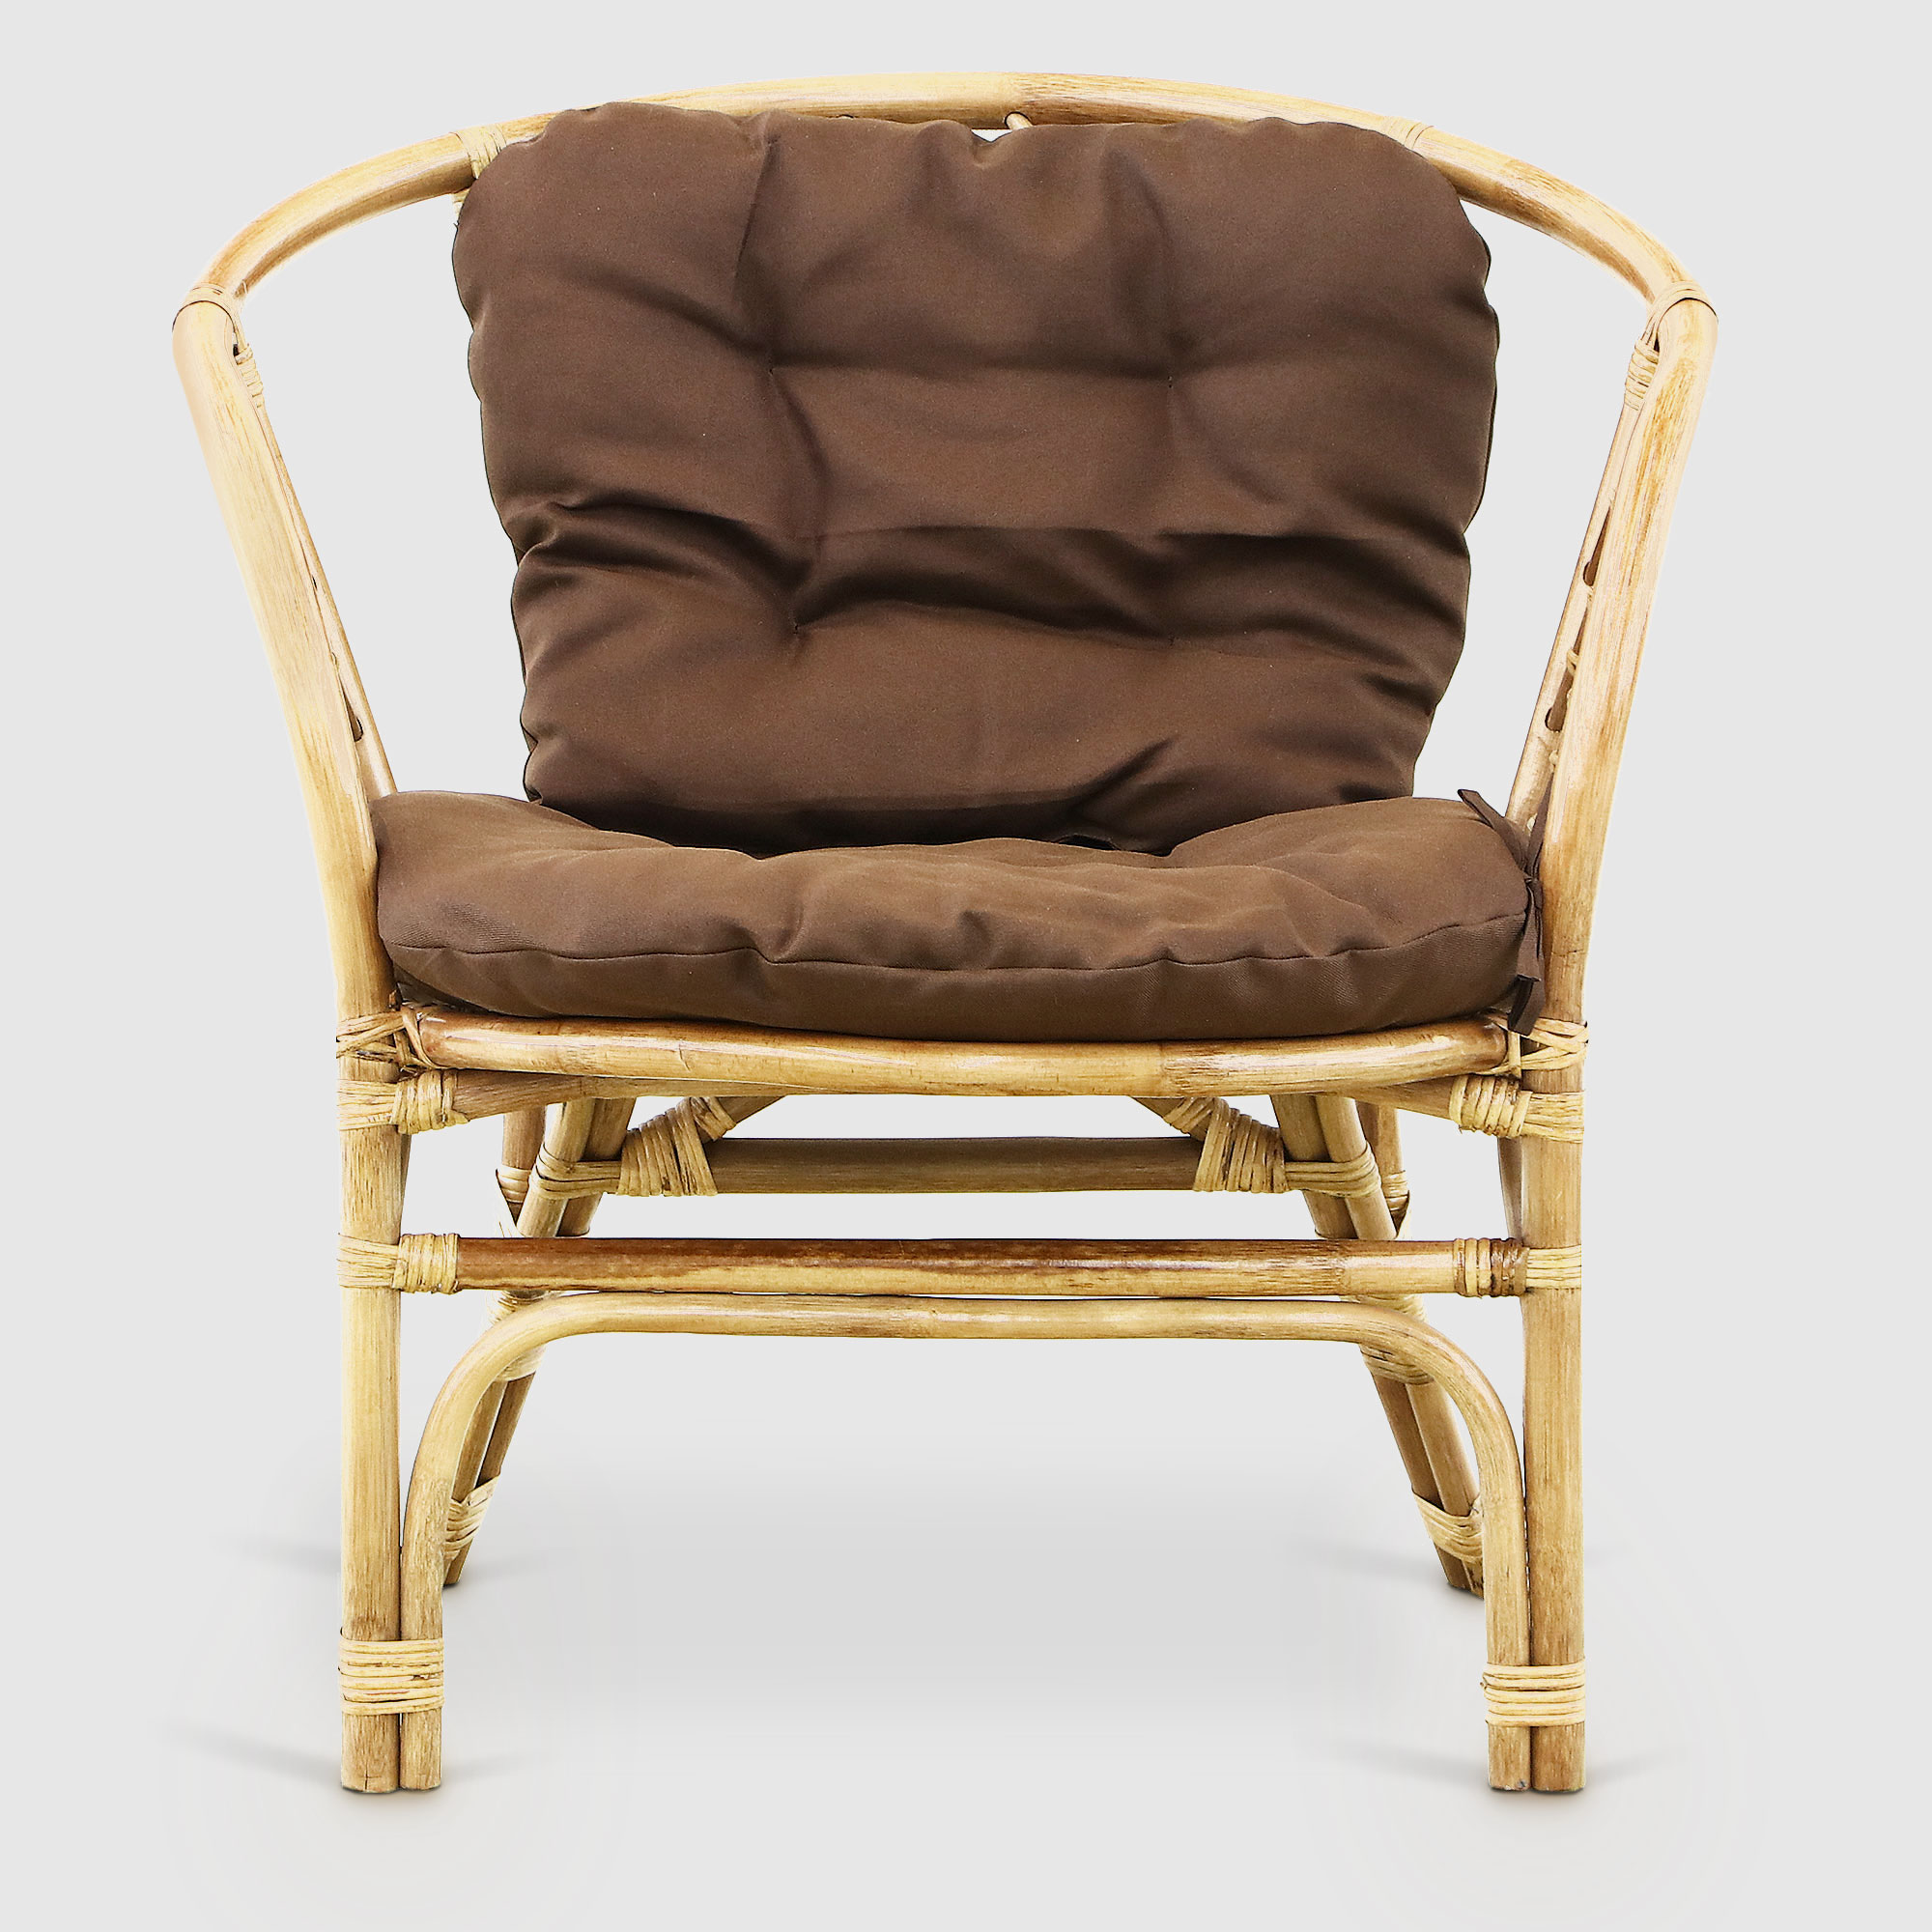 Комплект мебели Rattan grand toscana hon: диван, стол, 2 кресла, цвет светло-коричневый - фото 6